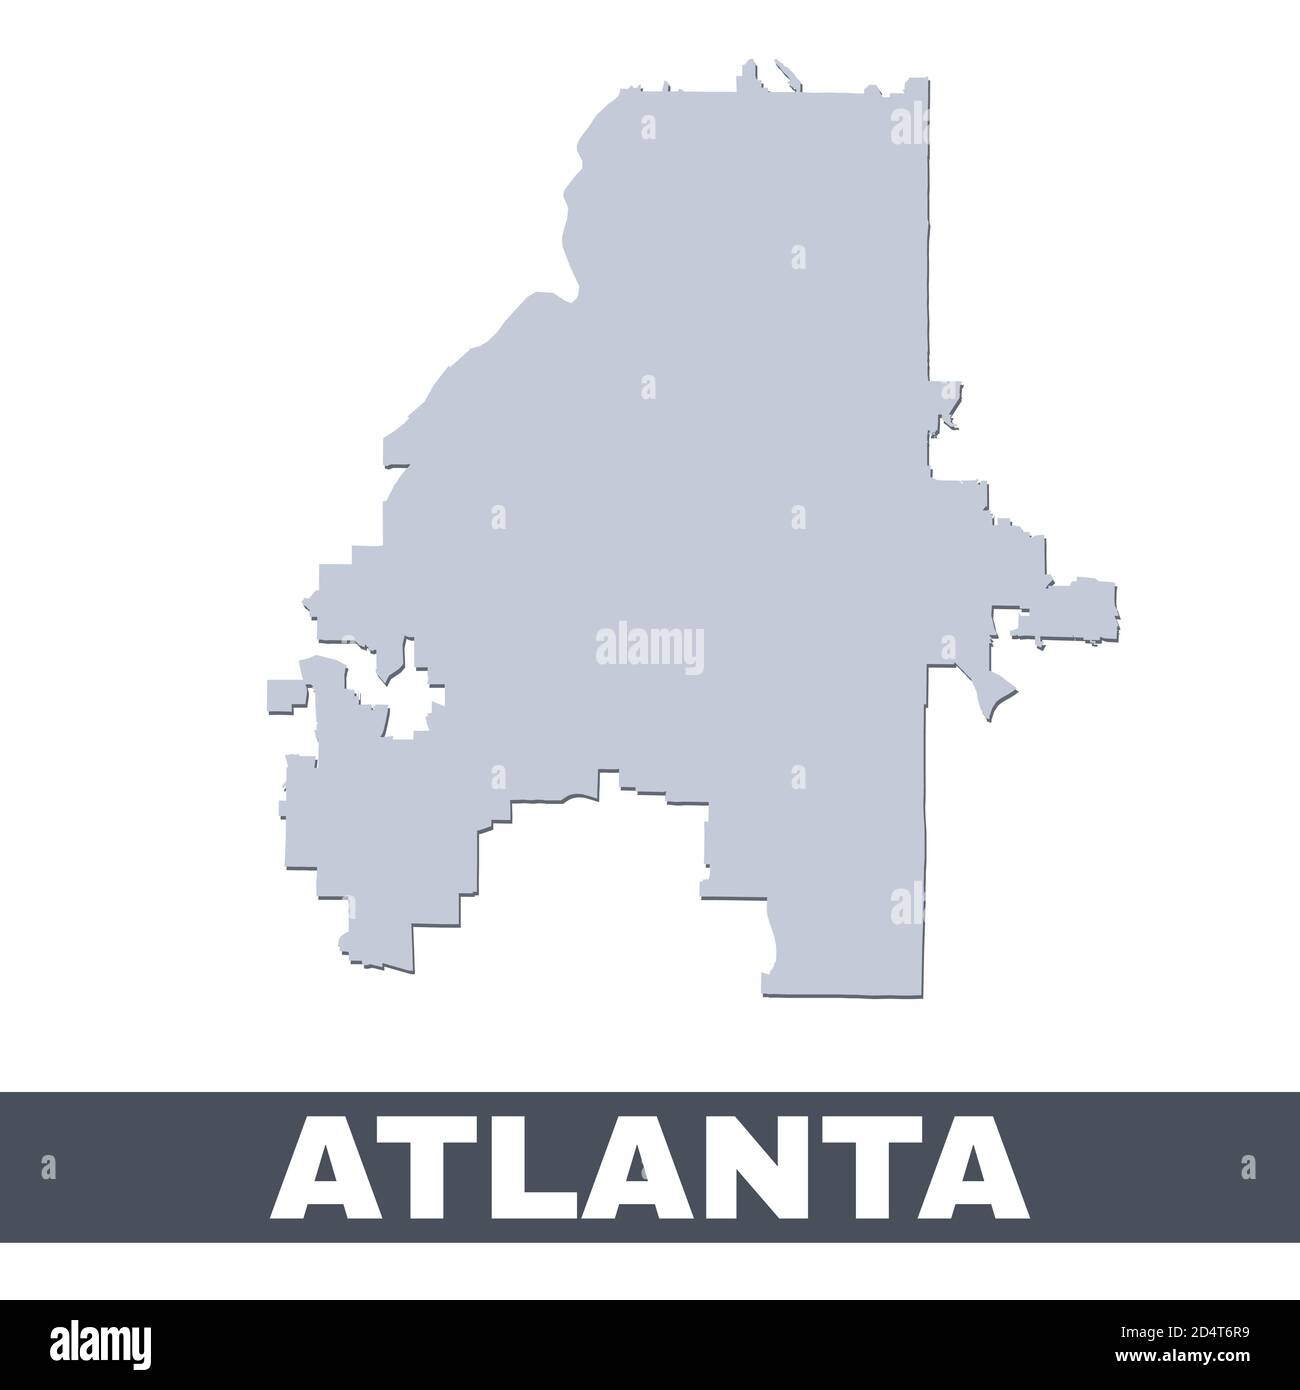 Übersichtskarte Atlanta. Vektor-Karte von Atlanta Stadtgebiet innerhalb seiner Grenzen. Grau mit Schatten auf weißem Hintergrund. Isolierte Abbildung. Stock Vektor